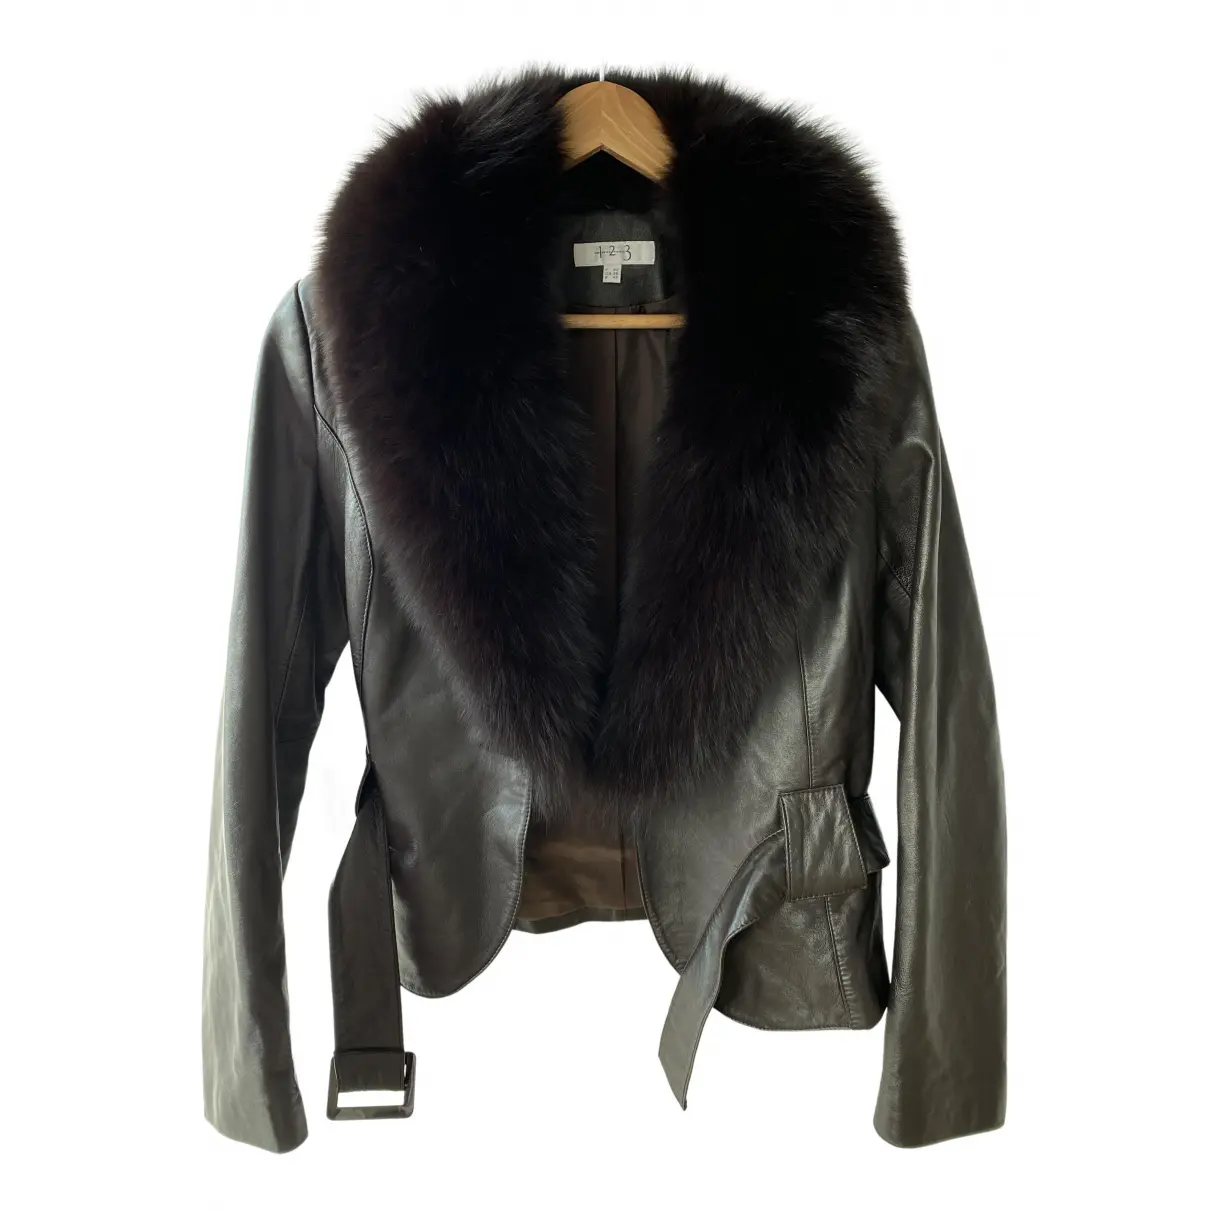 Leather short vest Maison 123